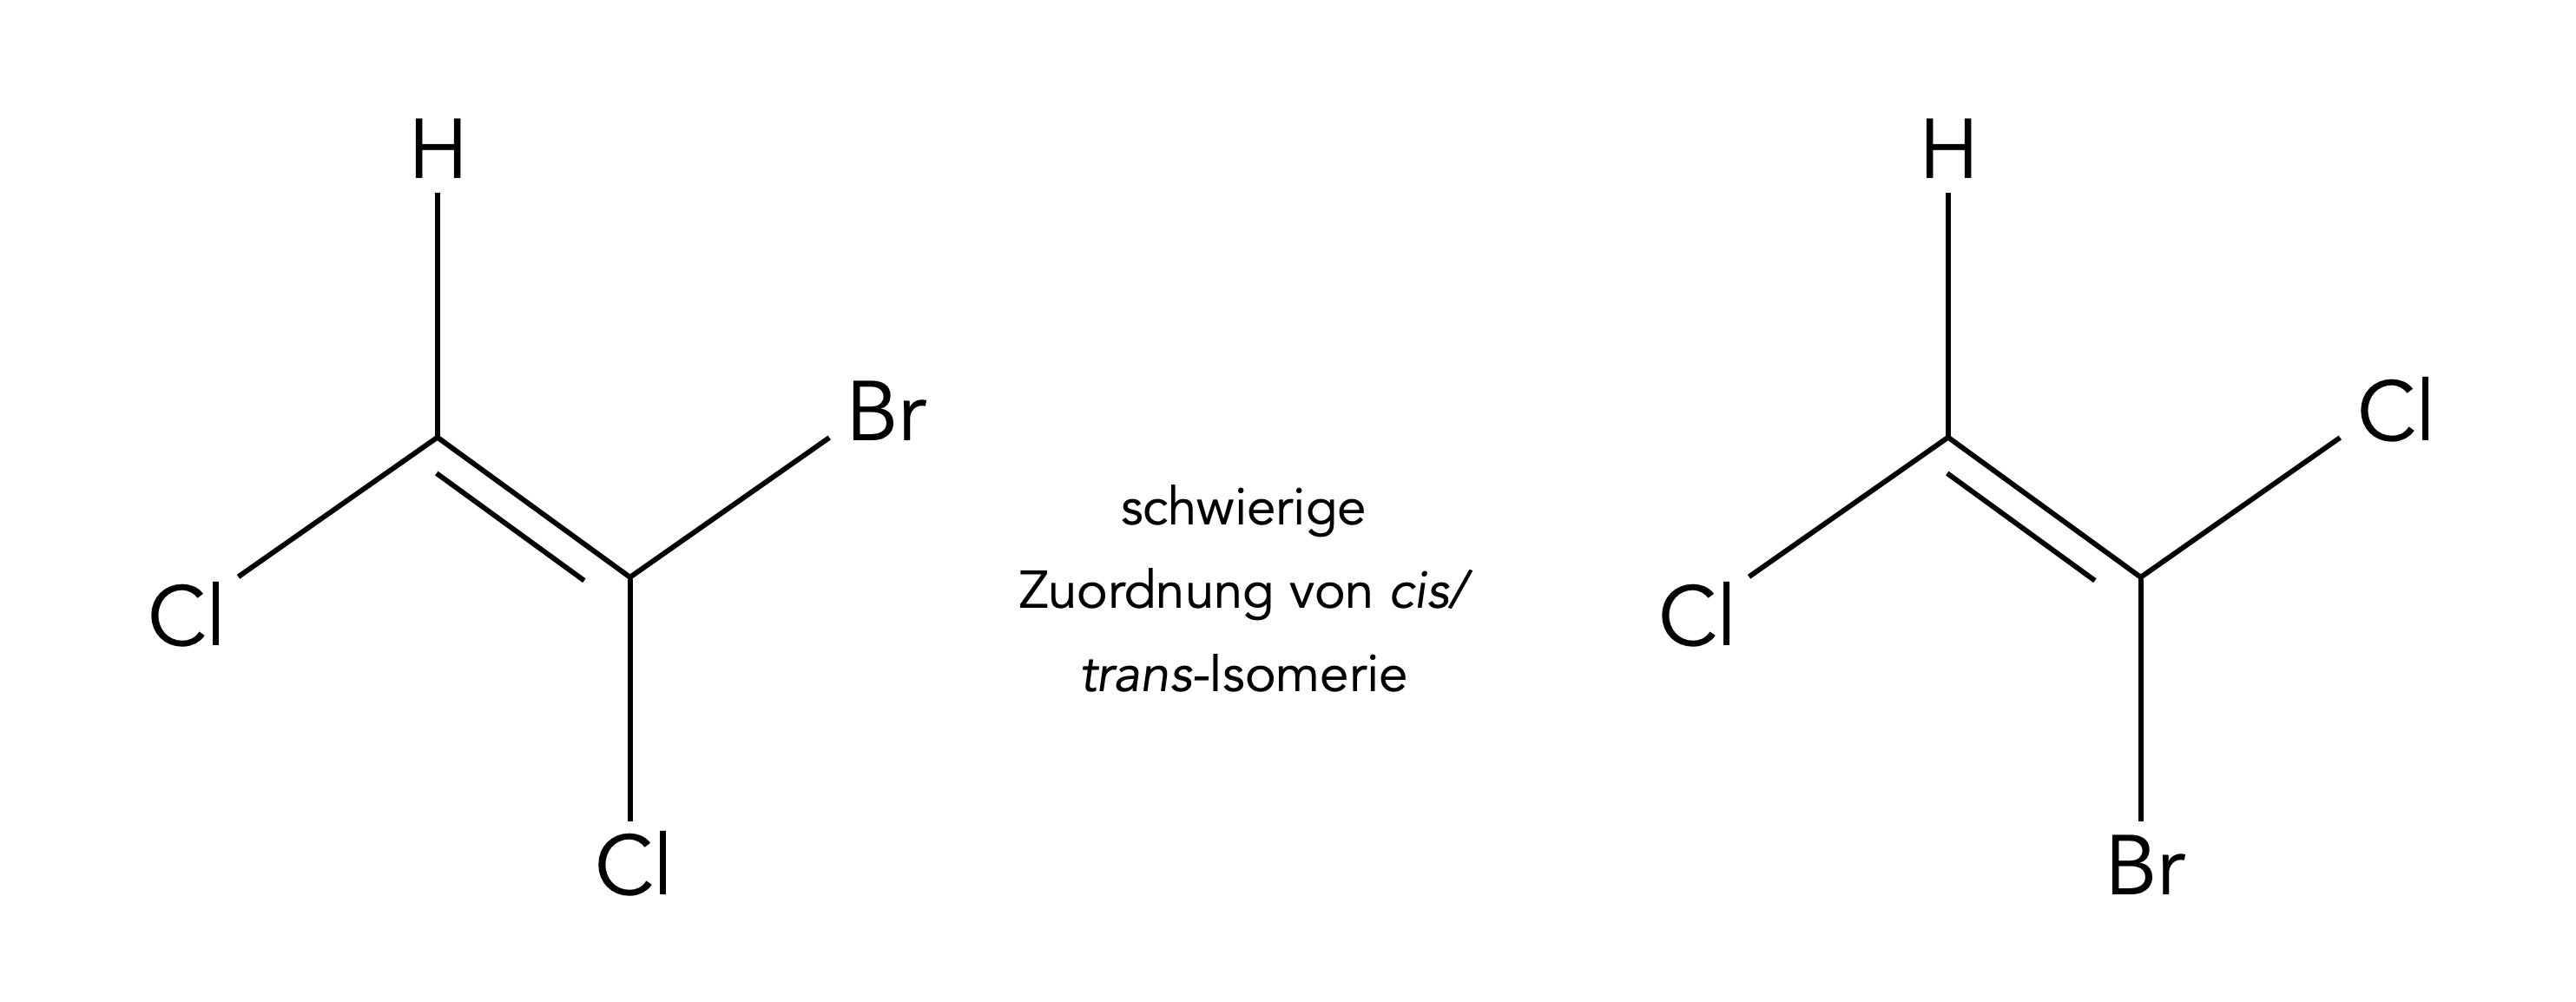 Ein komplizierterer Fall von cis/trans-Isomerie